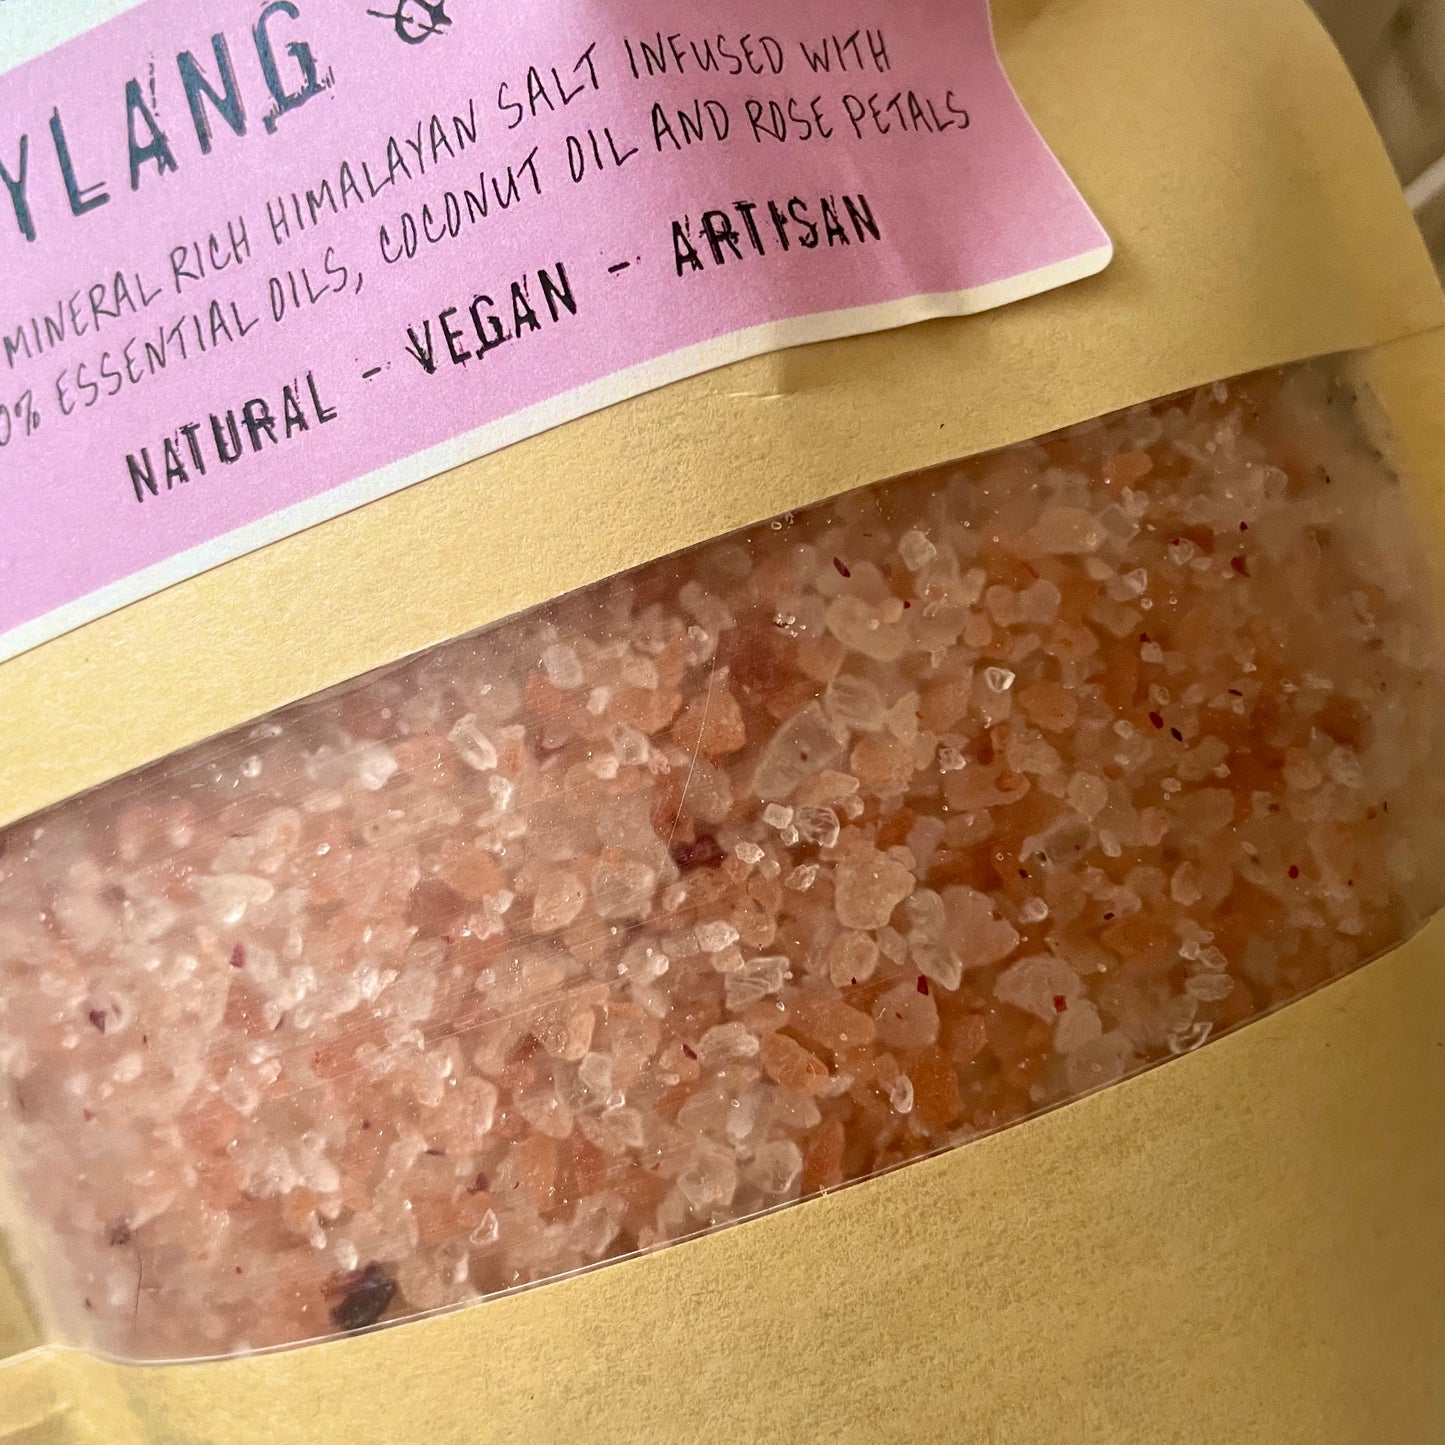 Ylang & Rose Himalayan Salt Bath Blend - Sensual 🌸🫦